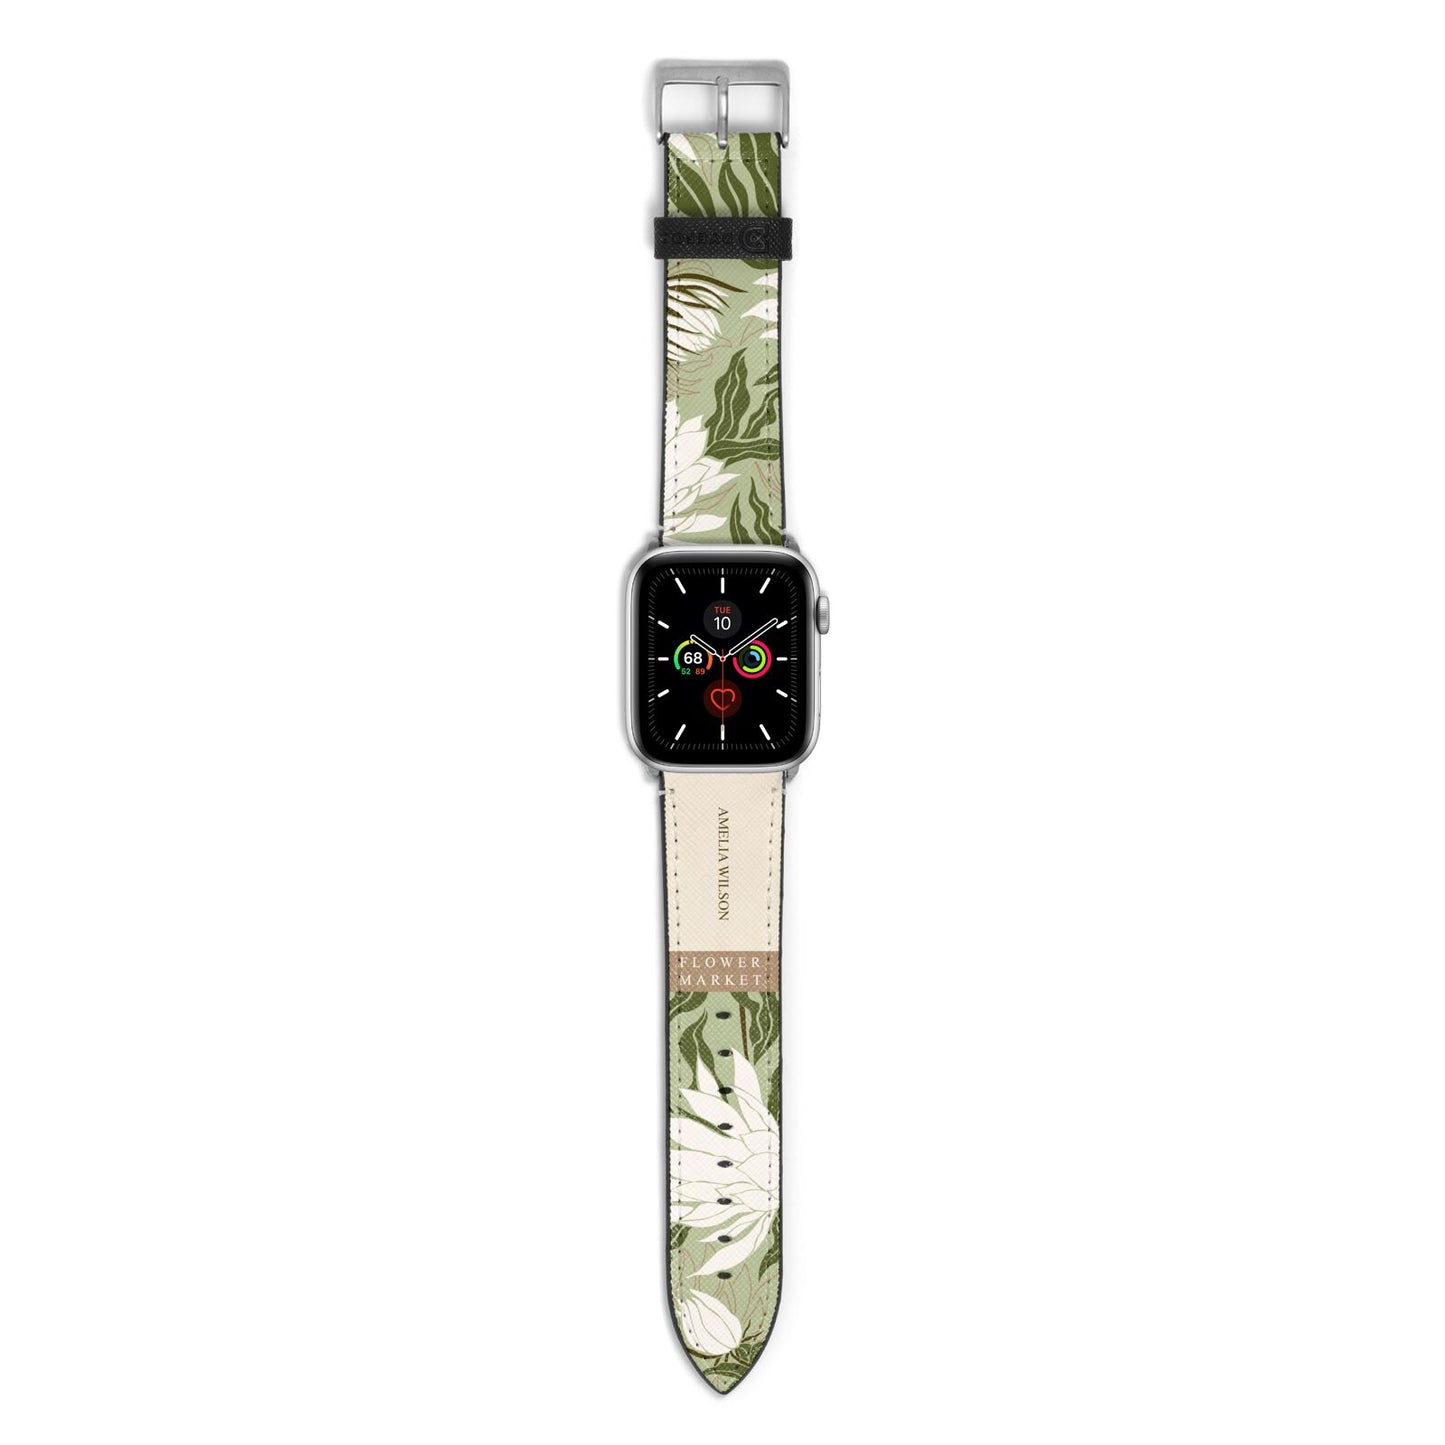 Tokyo Flower Market Apple Watch Strap with Silver Hardware